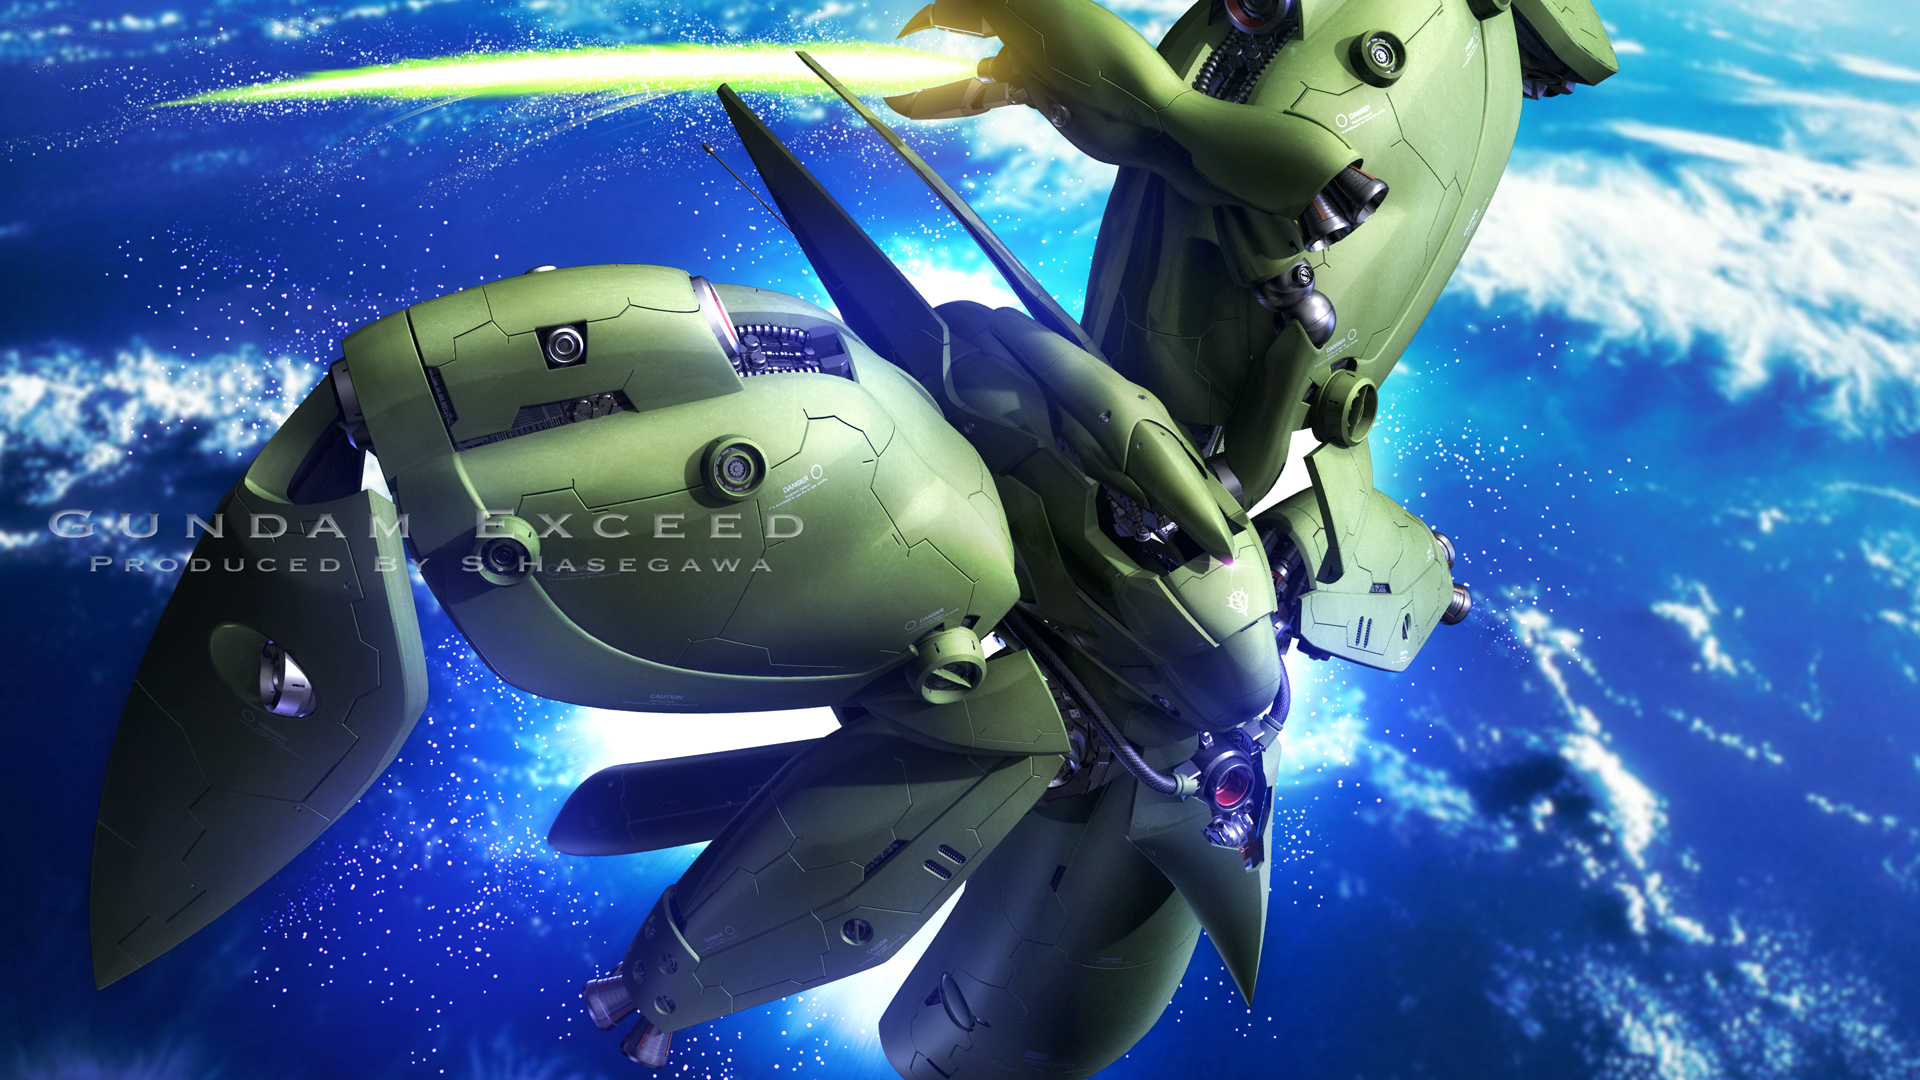 Anime 1920x1080 Mobile Suit Gundam 0083: Stardust Memory anime mechs Super Robot Taisen Neue Ziel artwork digital art fan art